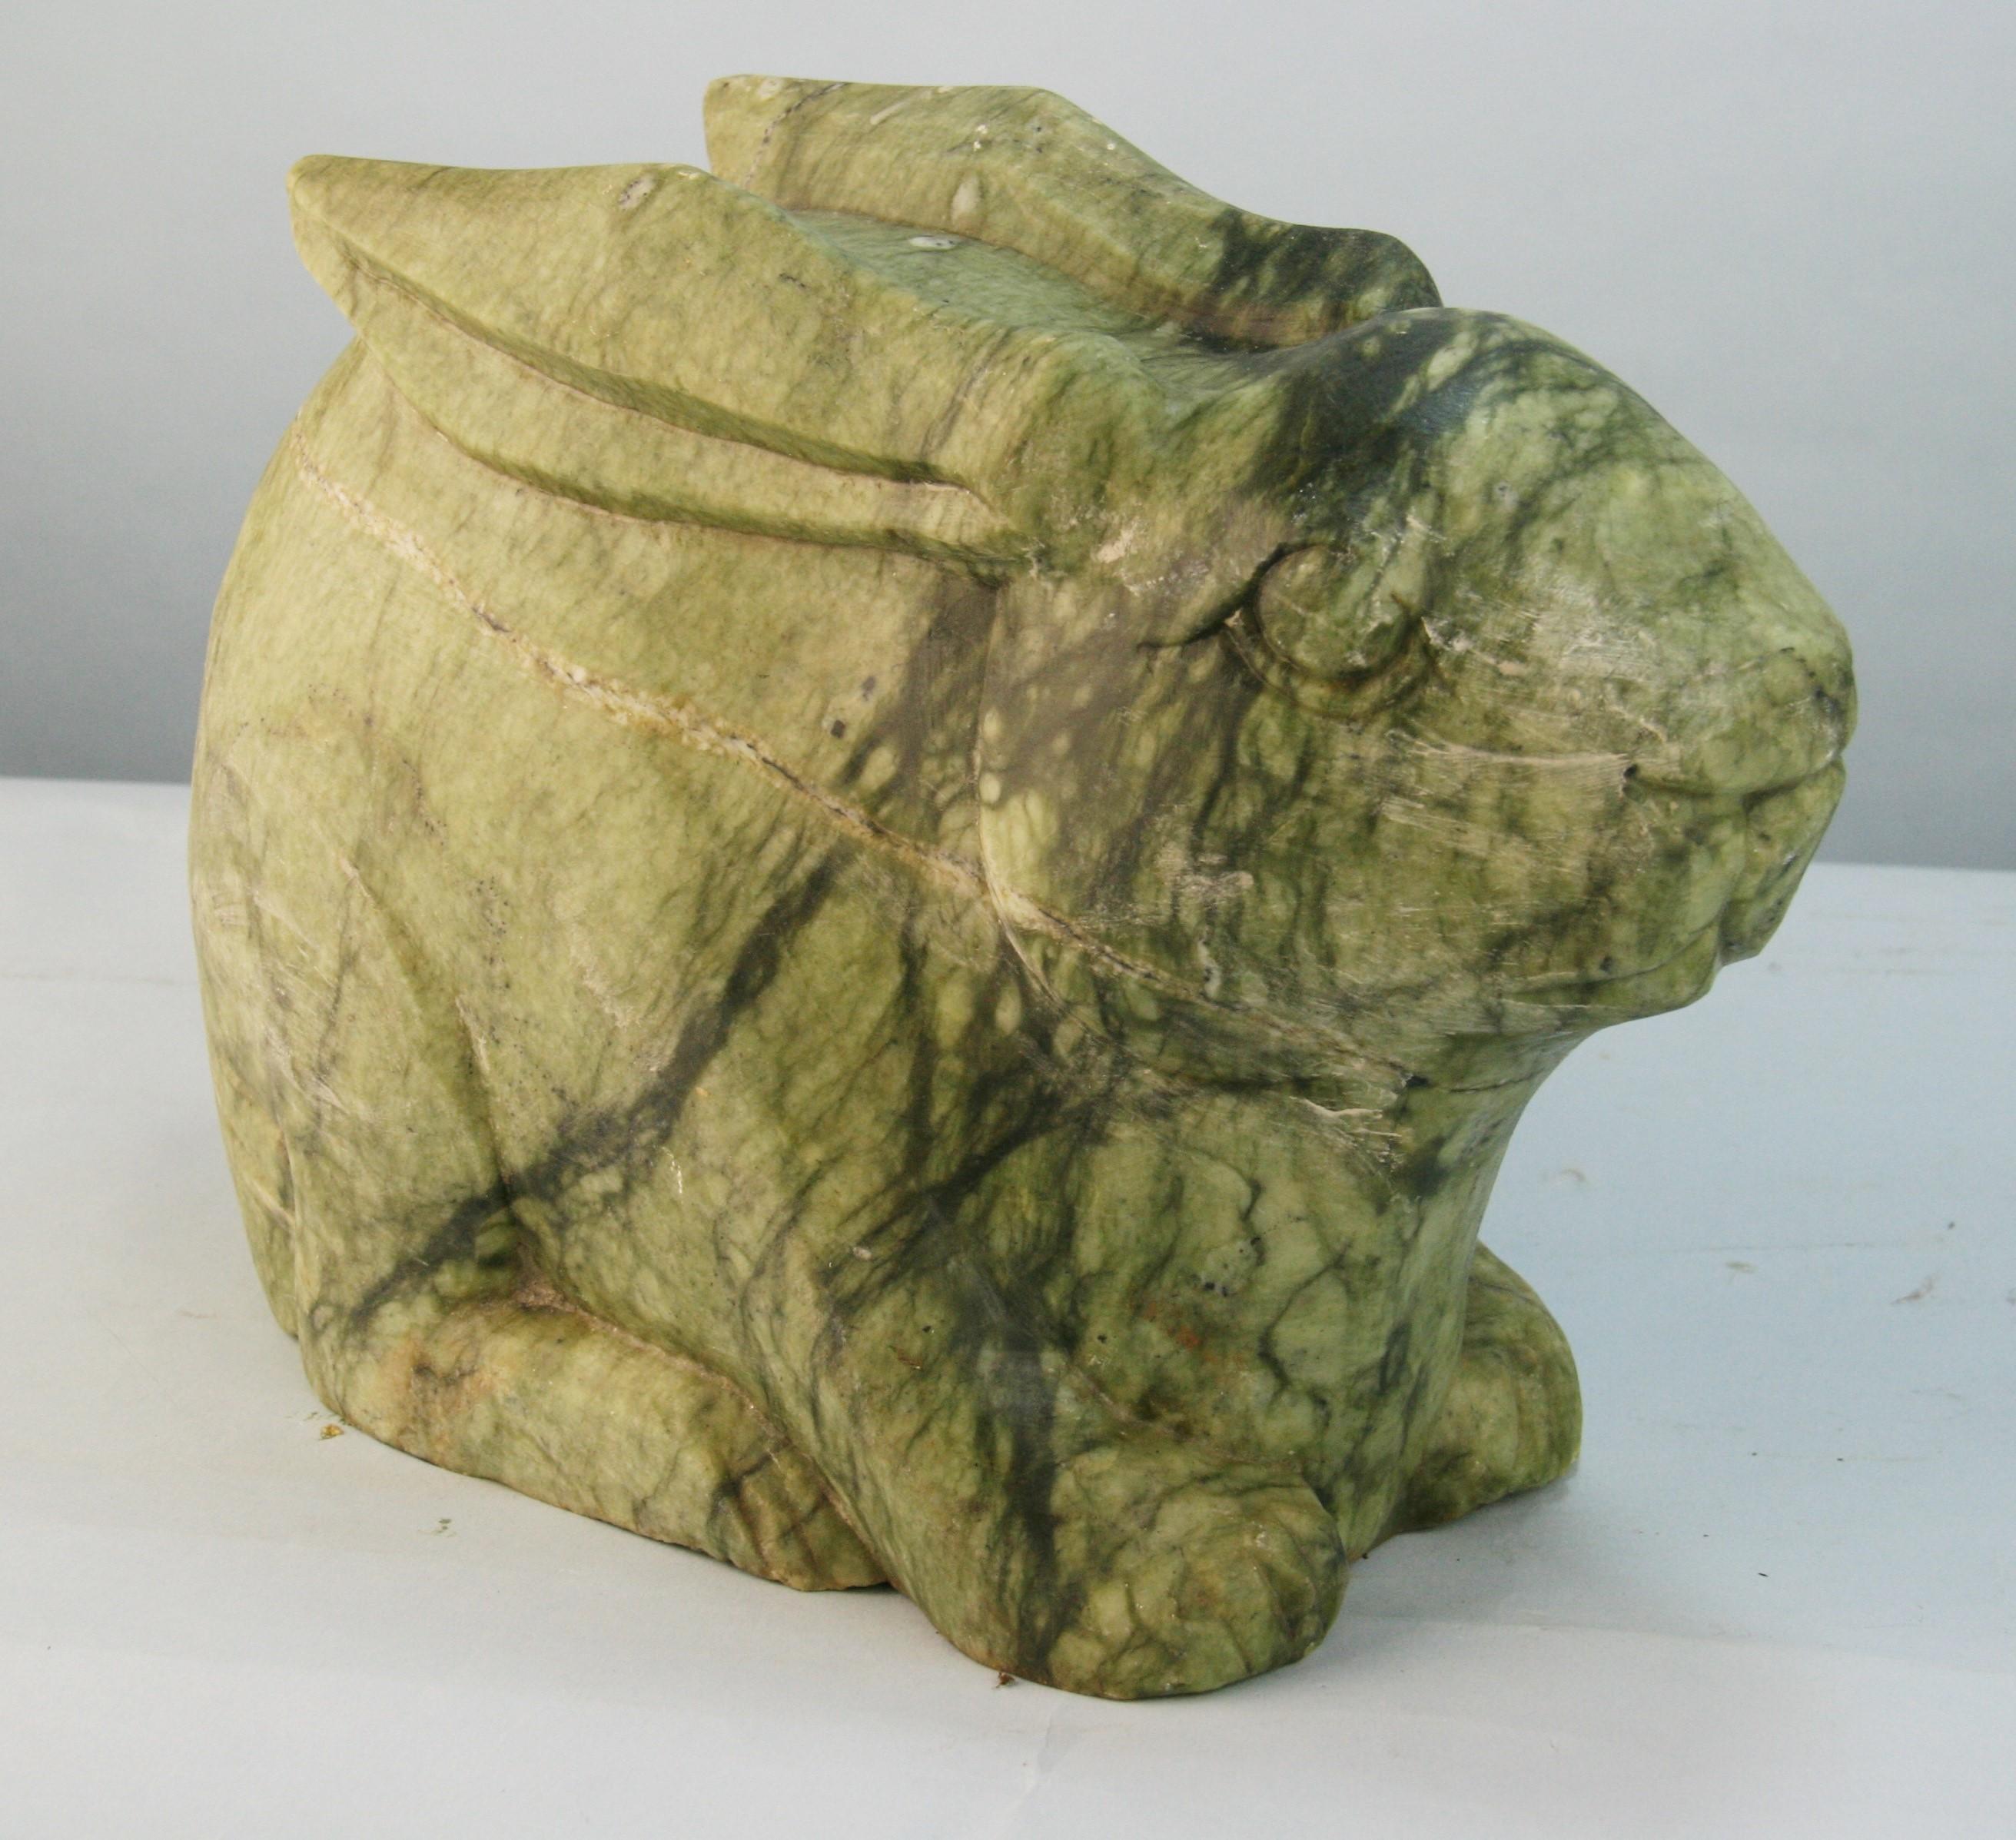 Lapin japonais en pierre verte sculpté à la main
Le lapin pèse 33 livres.